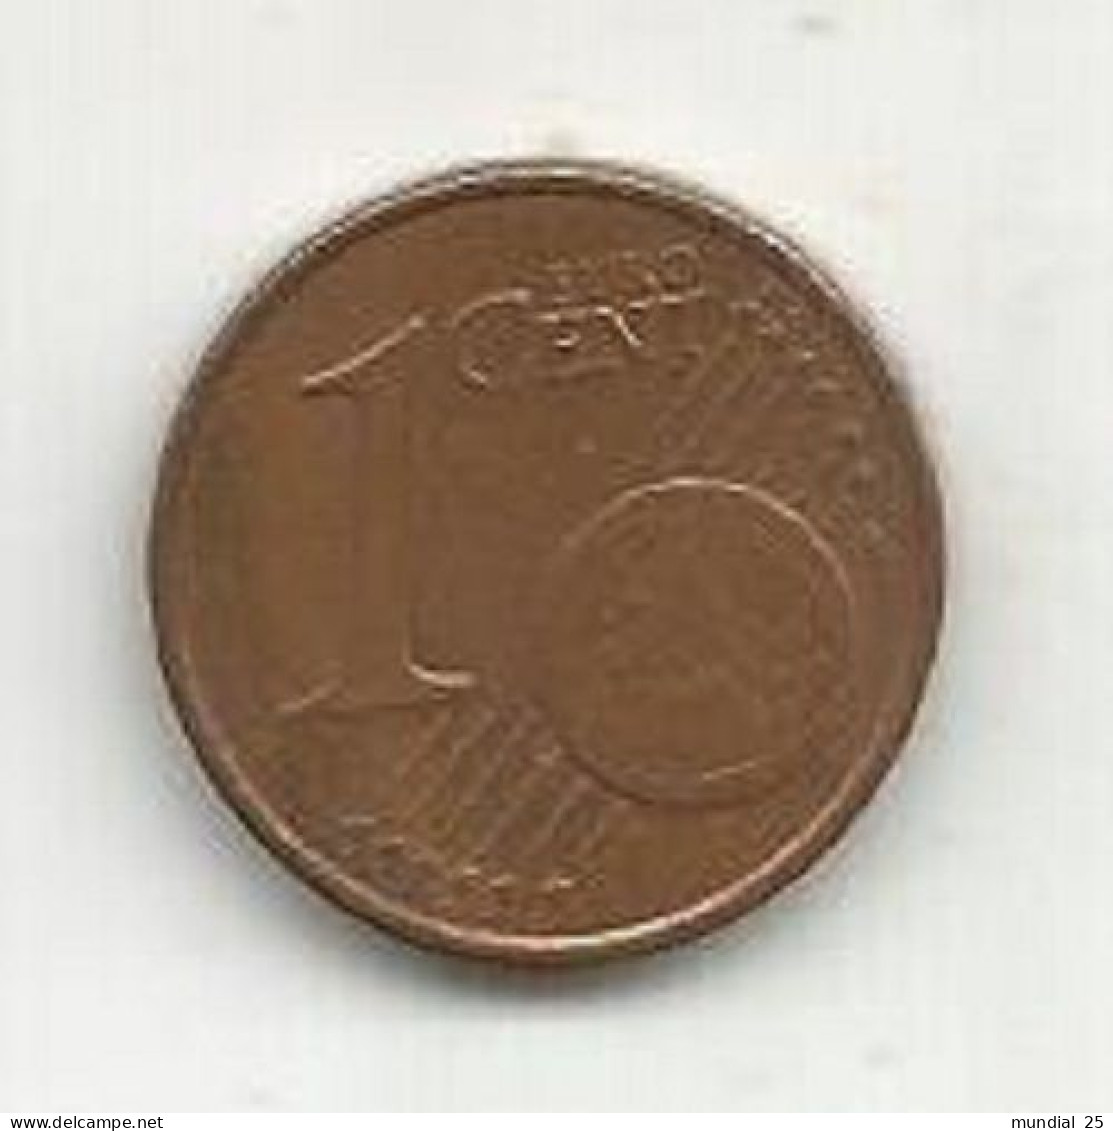 IRELAND 1 EURO CENT 2004 - Irlanda